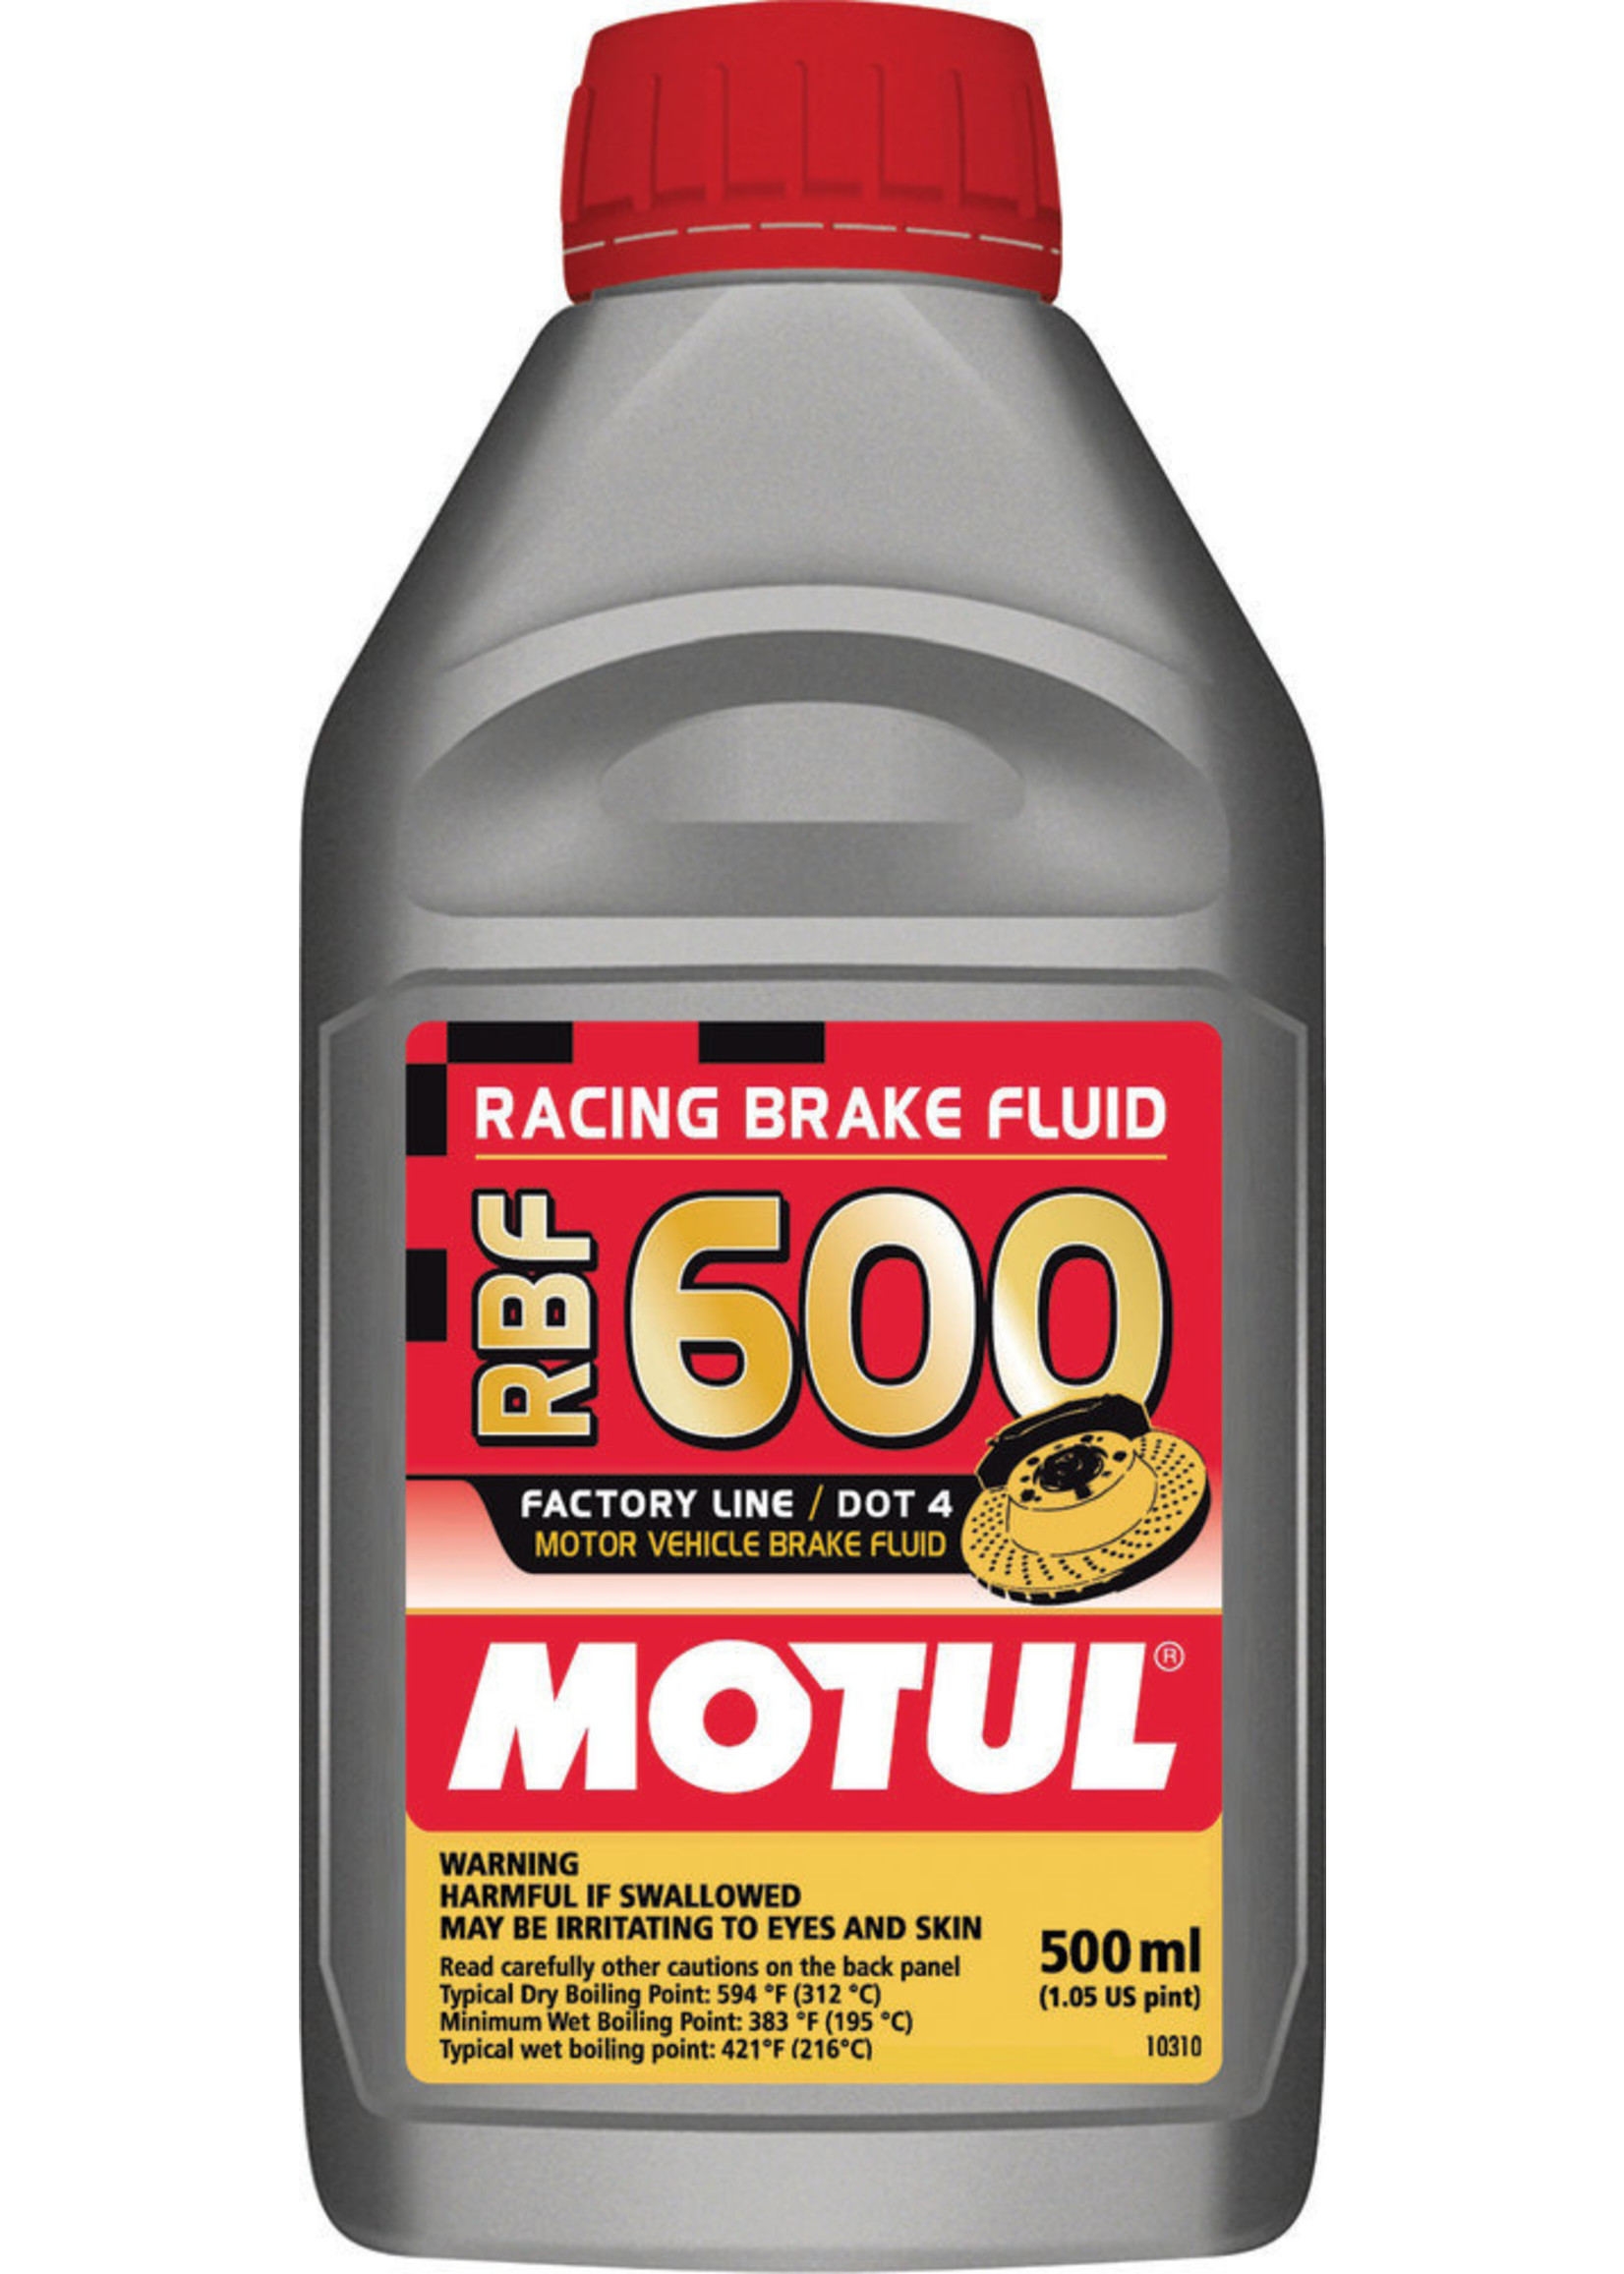 MOTUL MOTUL RBF 600 RACING BRAKE FLUID 500ML